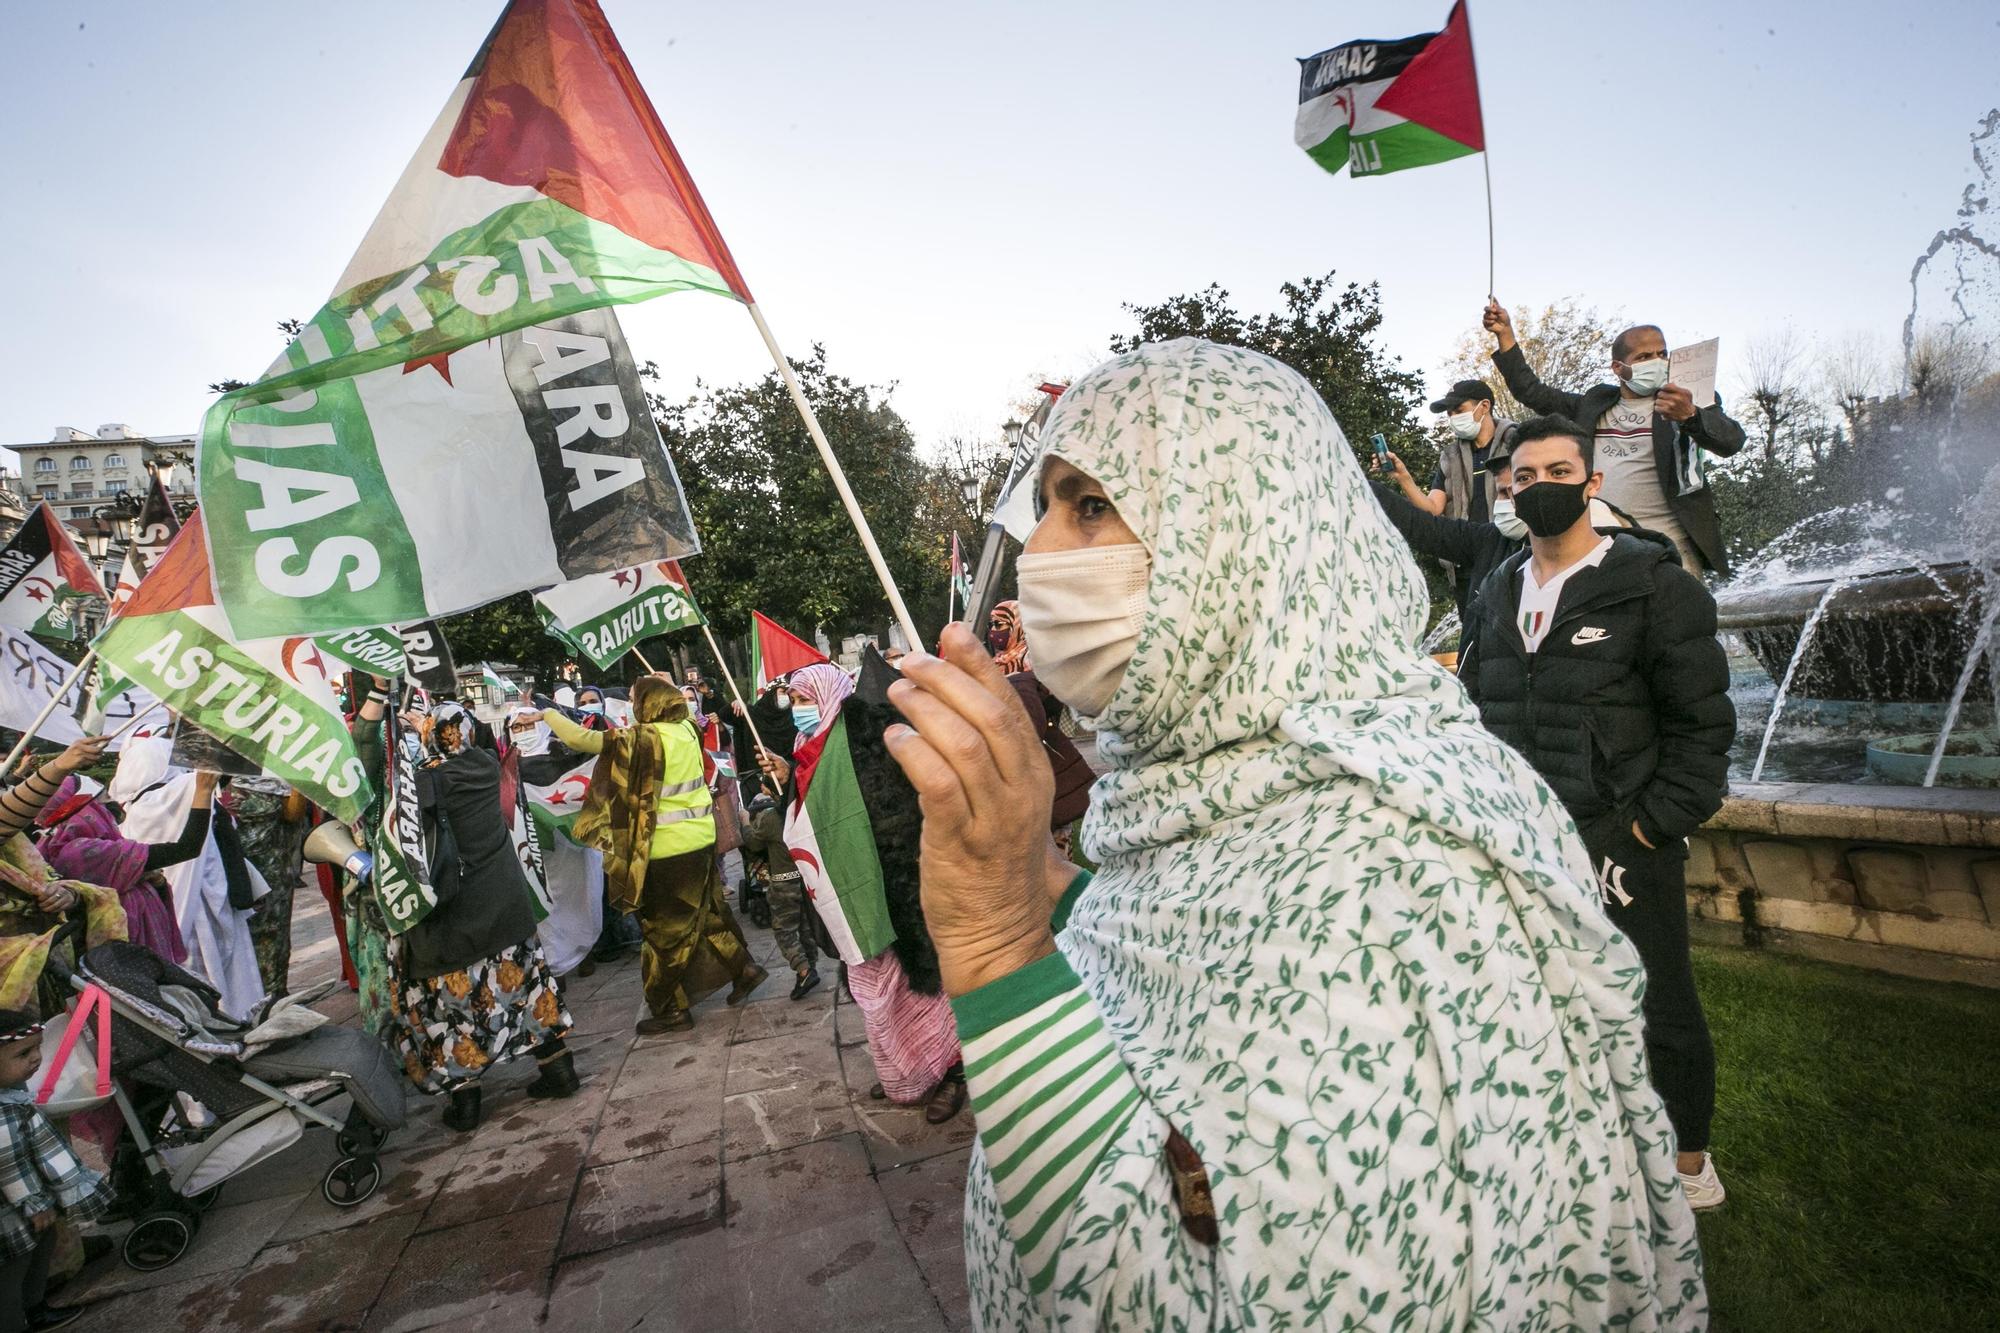 La manifestación saharaui contra la ocupación marroquí, en imágenes